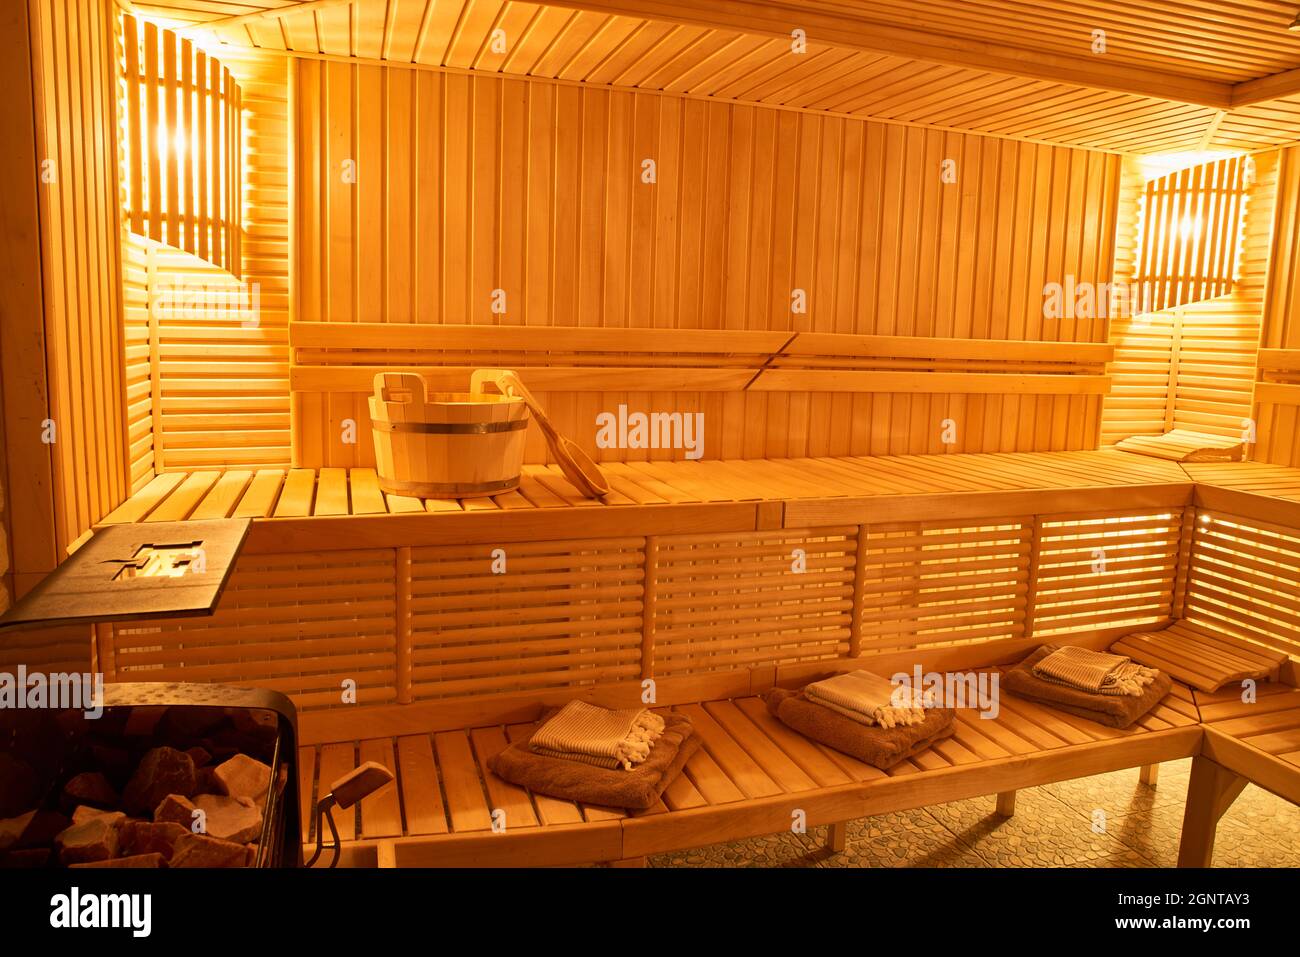 Wooden Sauna, wet area, steam, recreation zone Stock Photo